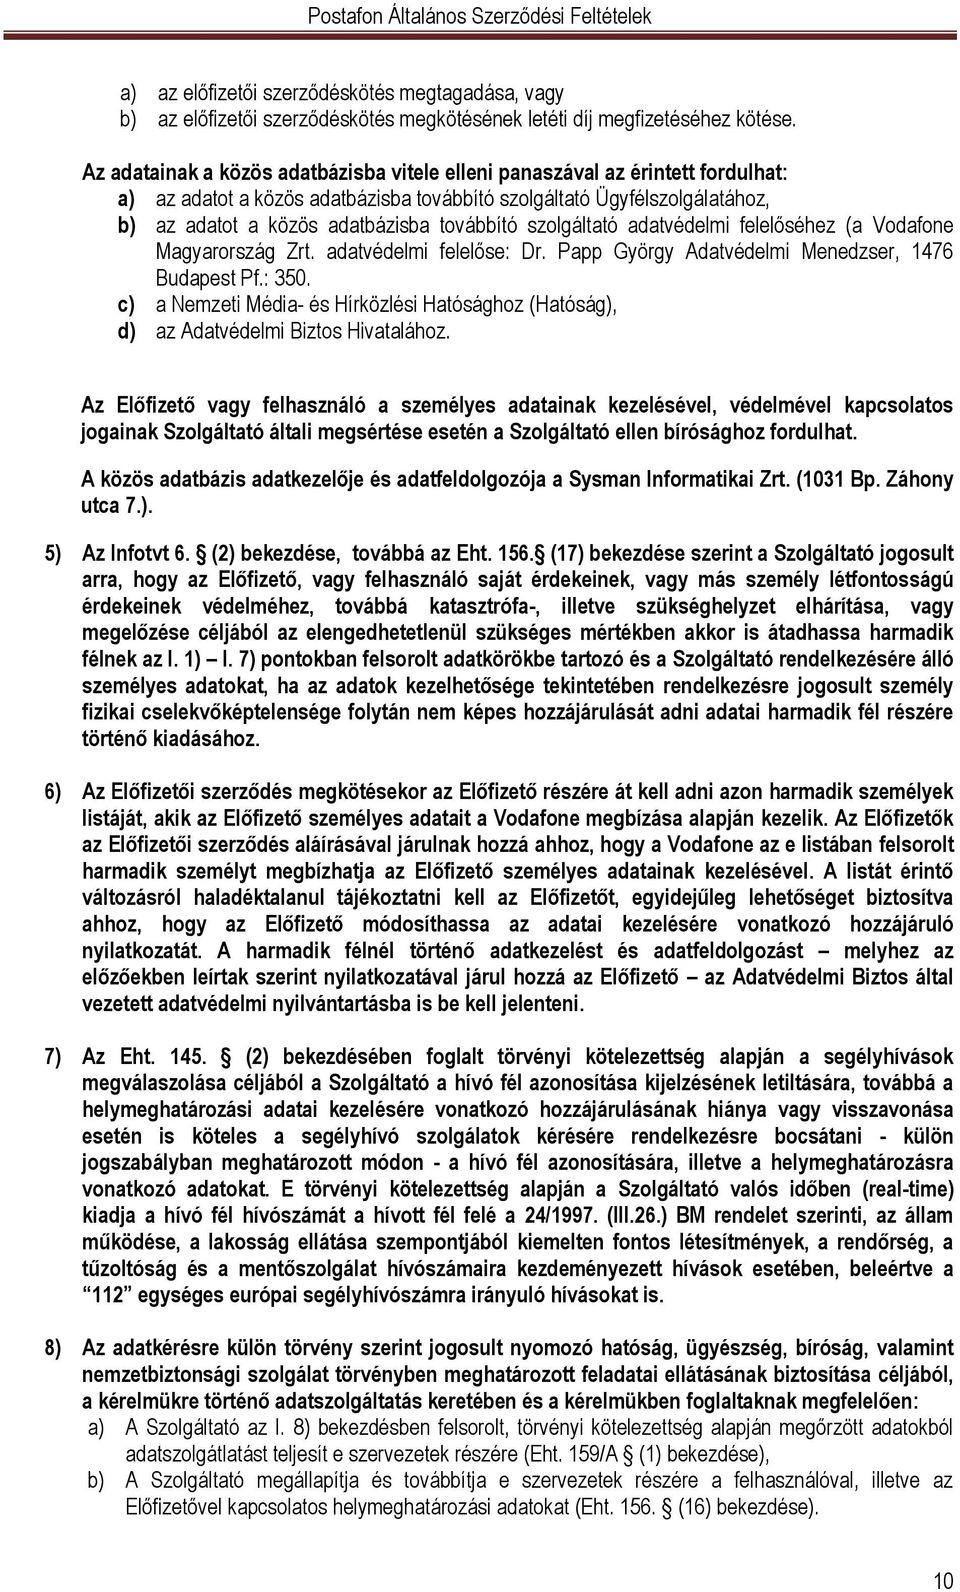 szolgáltató adatvédelmi felelőséhez (a Vodafone Magyarország Zrt. adatvédelmi felelőse: Dr. Papp György Adatvédelmi Menedzser, 1476 Budapest Pf.: 350.